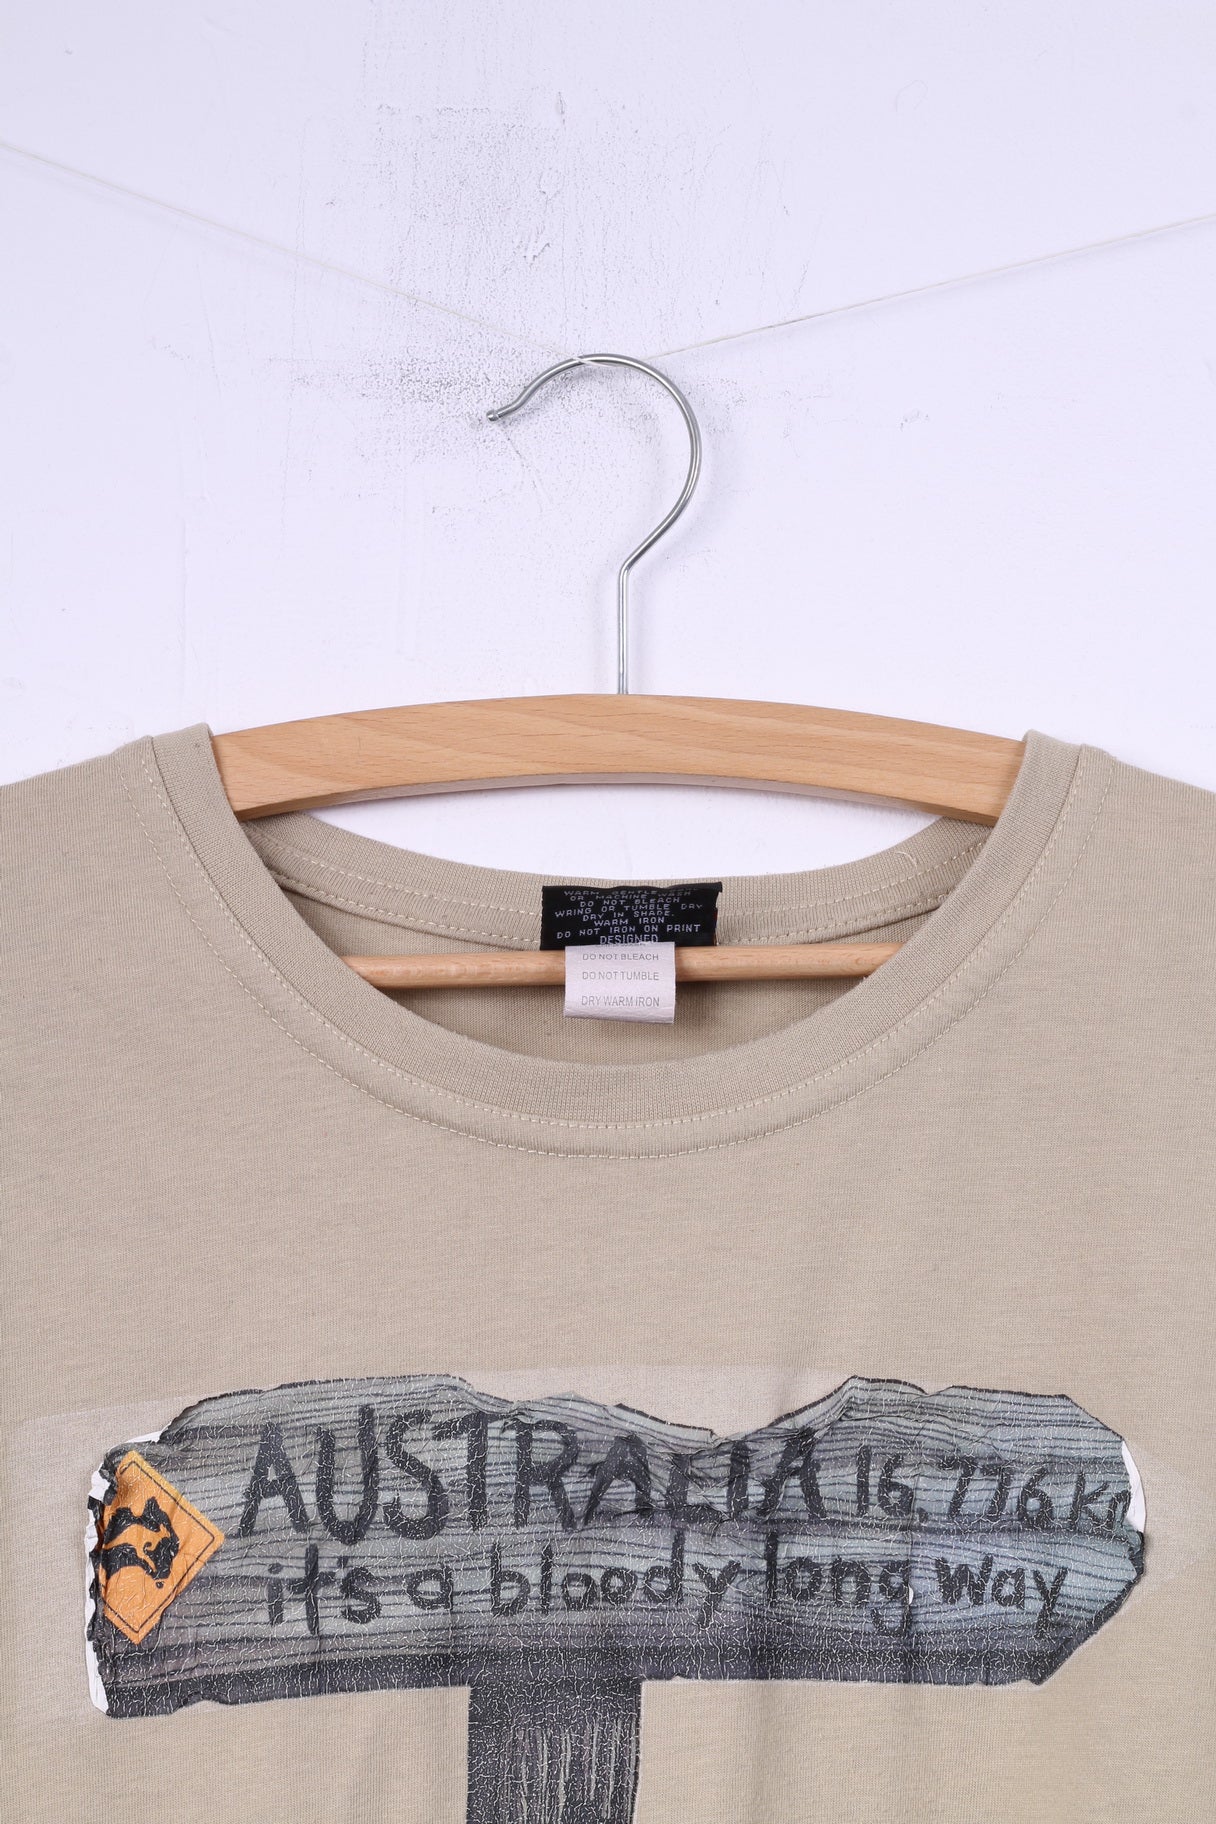 Samsousan Hommes M T-shirt Graphique Australie Way Beige Haut En Coton 